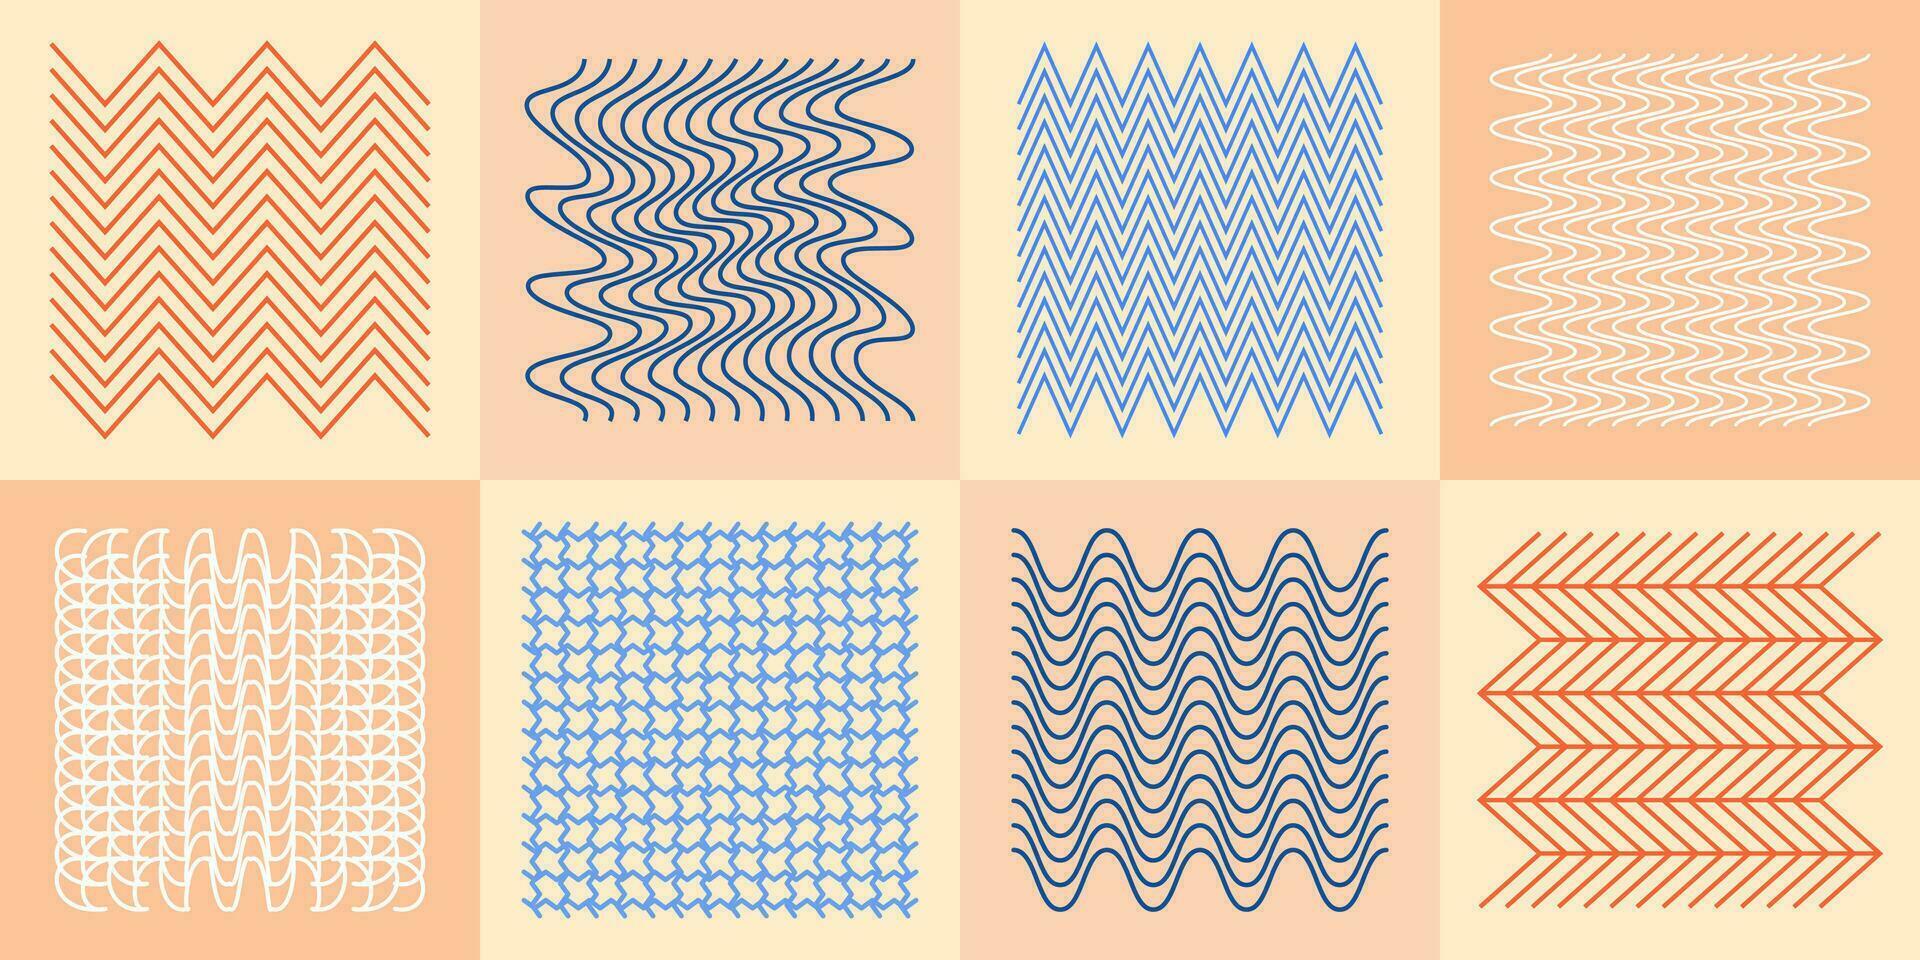 abstract golvend en zigzag voorwerpen en roosters. vector illustratie. lineair tekening van kromgetrokken en convex vormen. reeks van ontwerp elementen voor decoreren.